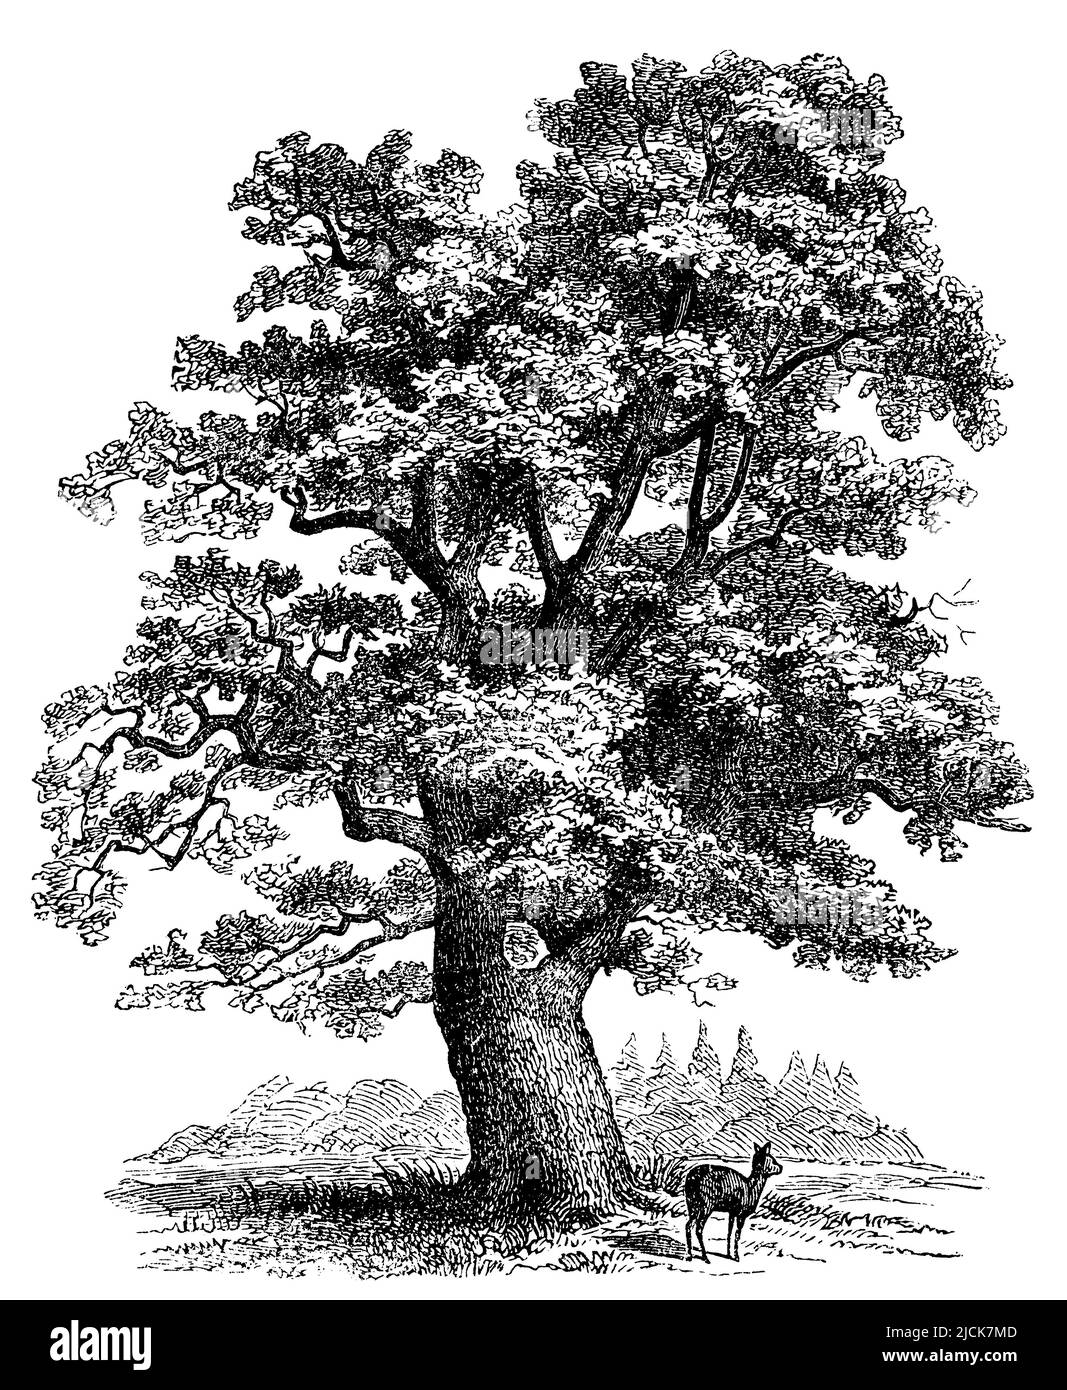 Chêne français, Quercus robur, anonym (livre botanique, 1880), Stieleiche, chêne pédonculé Banque D'Images